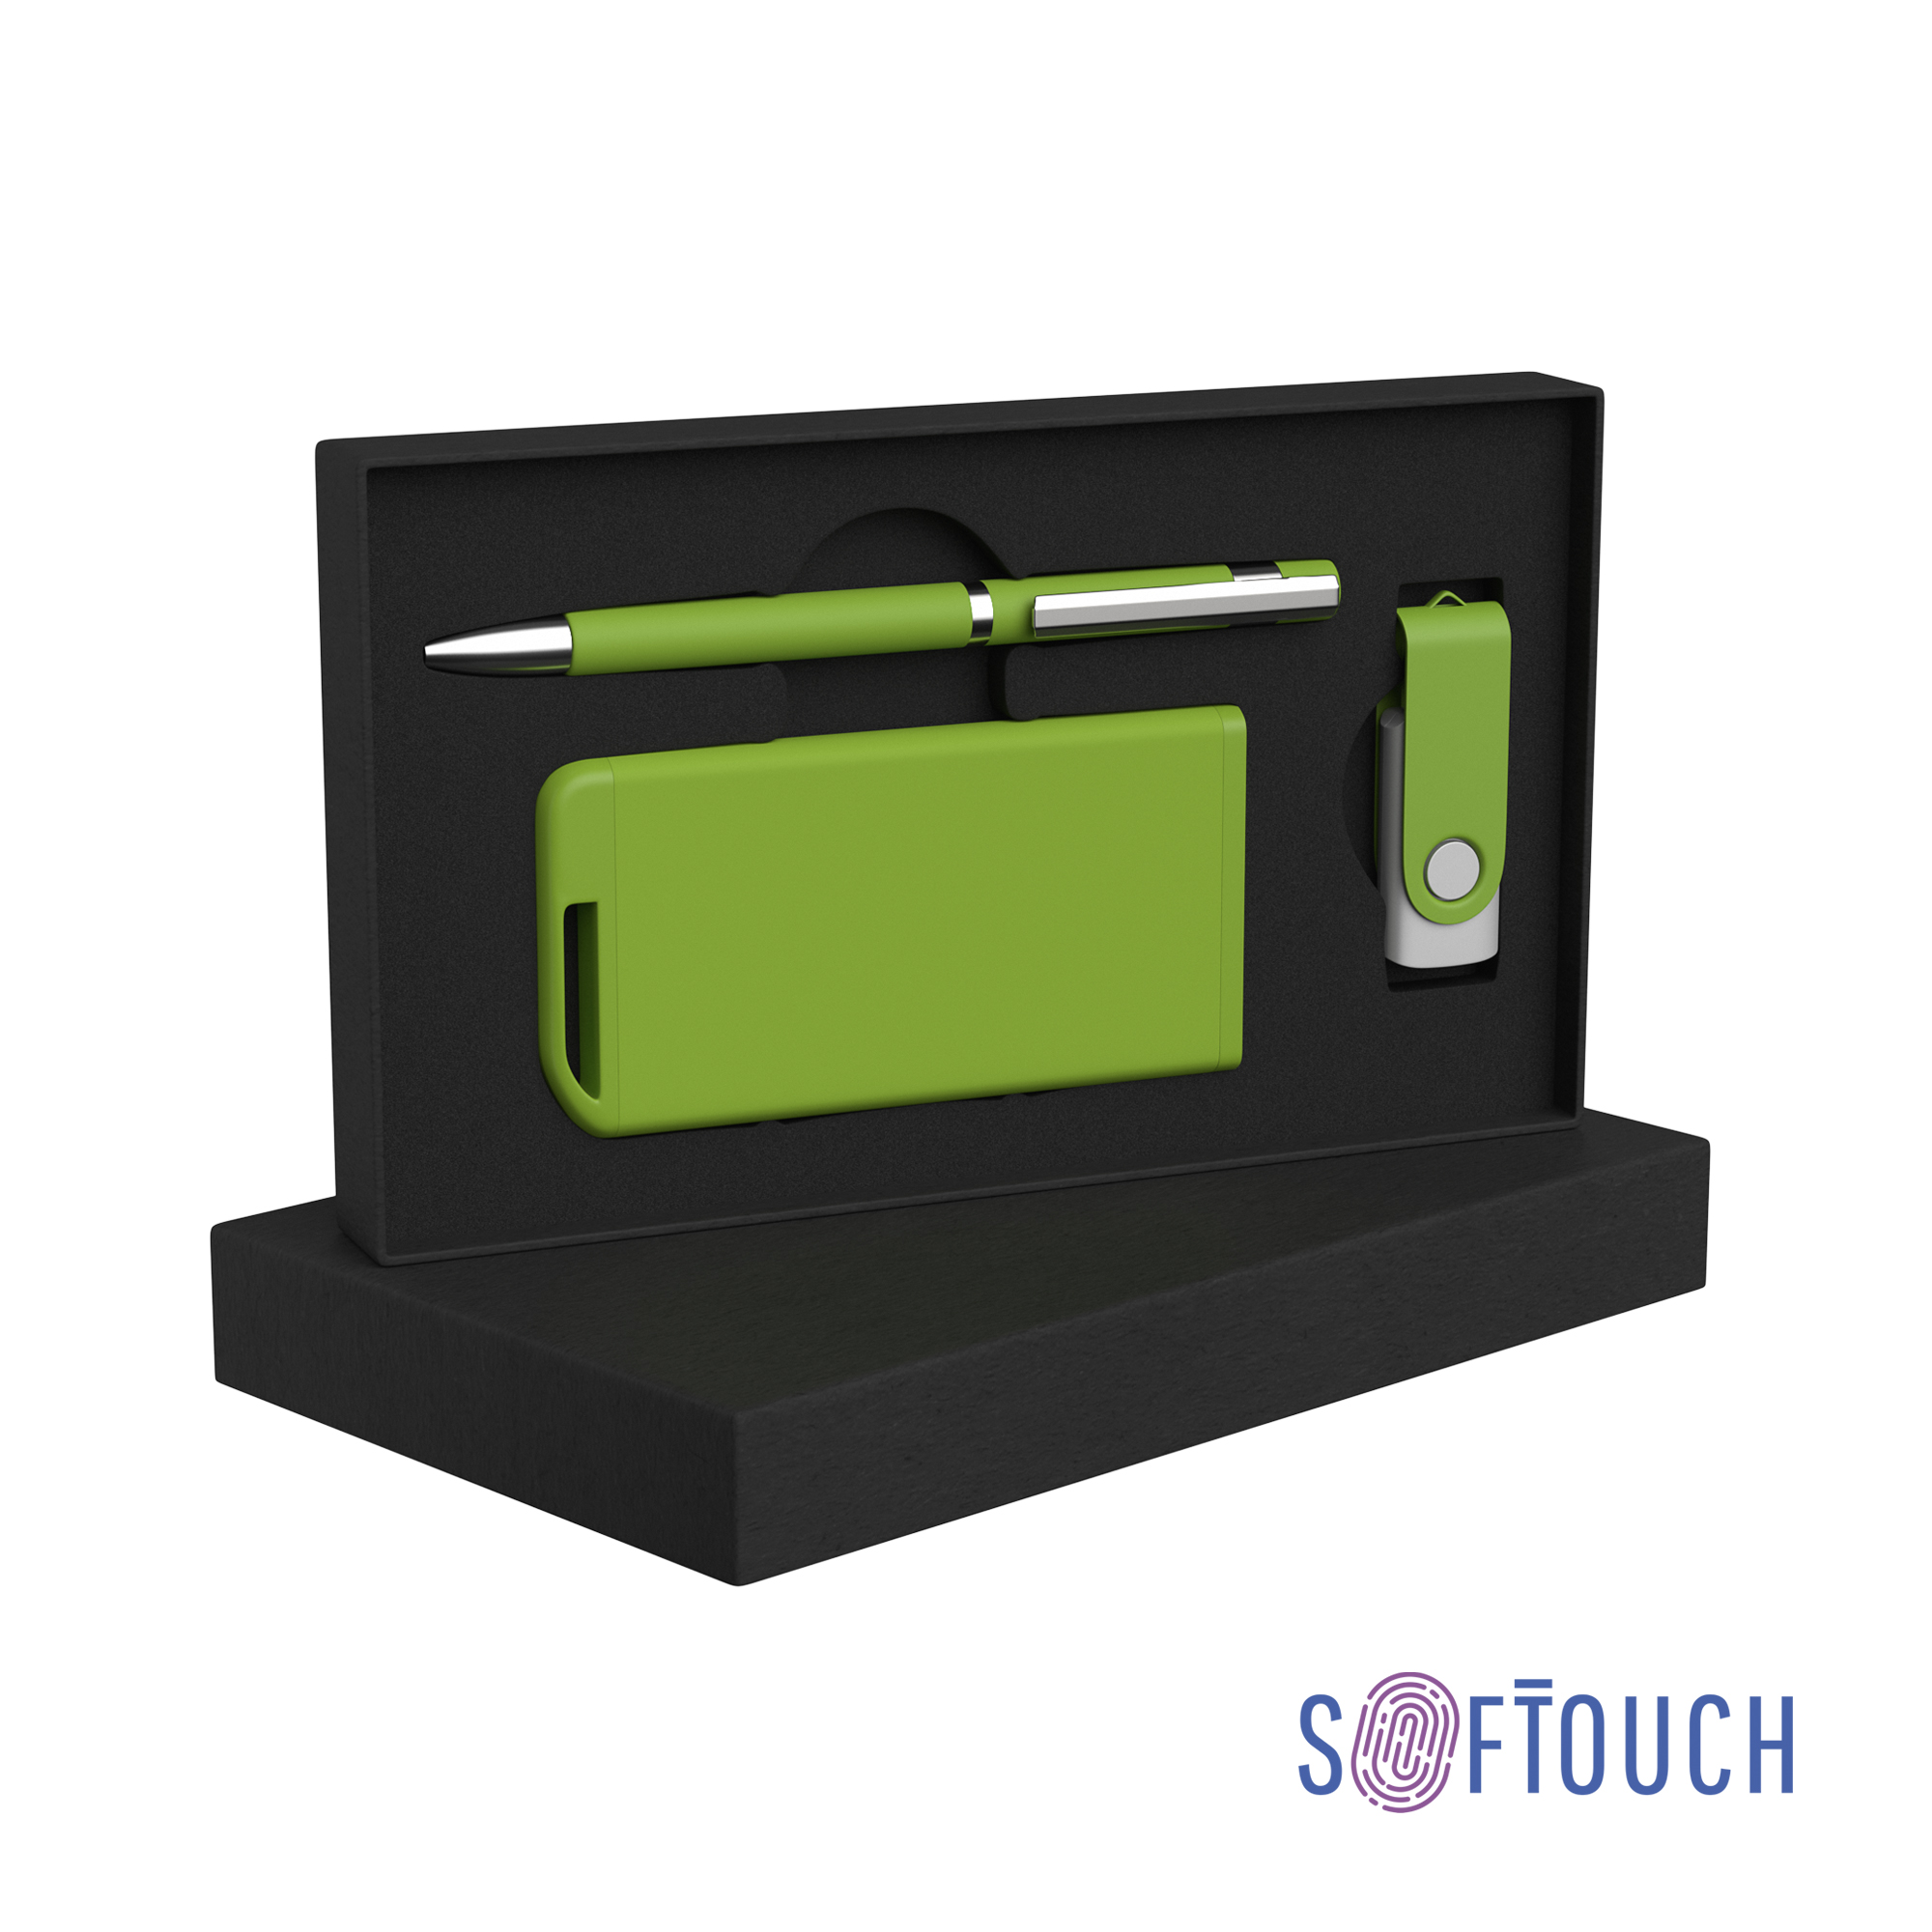 Набор ручка + флеш-карта 16Гб + зарядное устройство 4000 mAh в футляре, soft touch зеленое яблоко